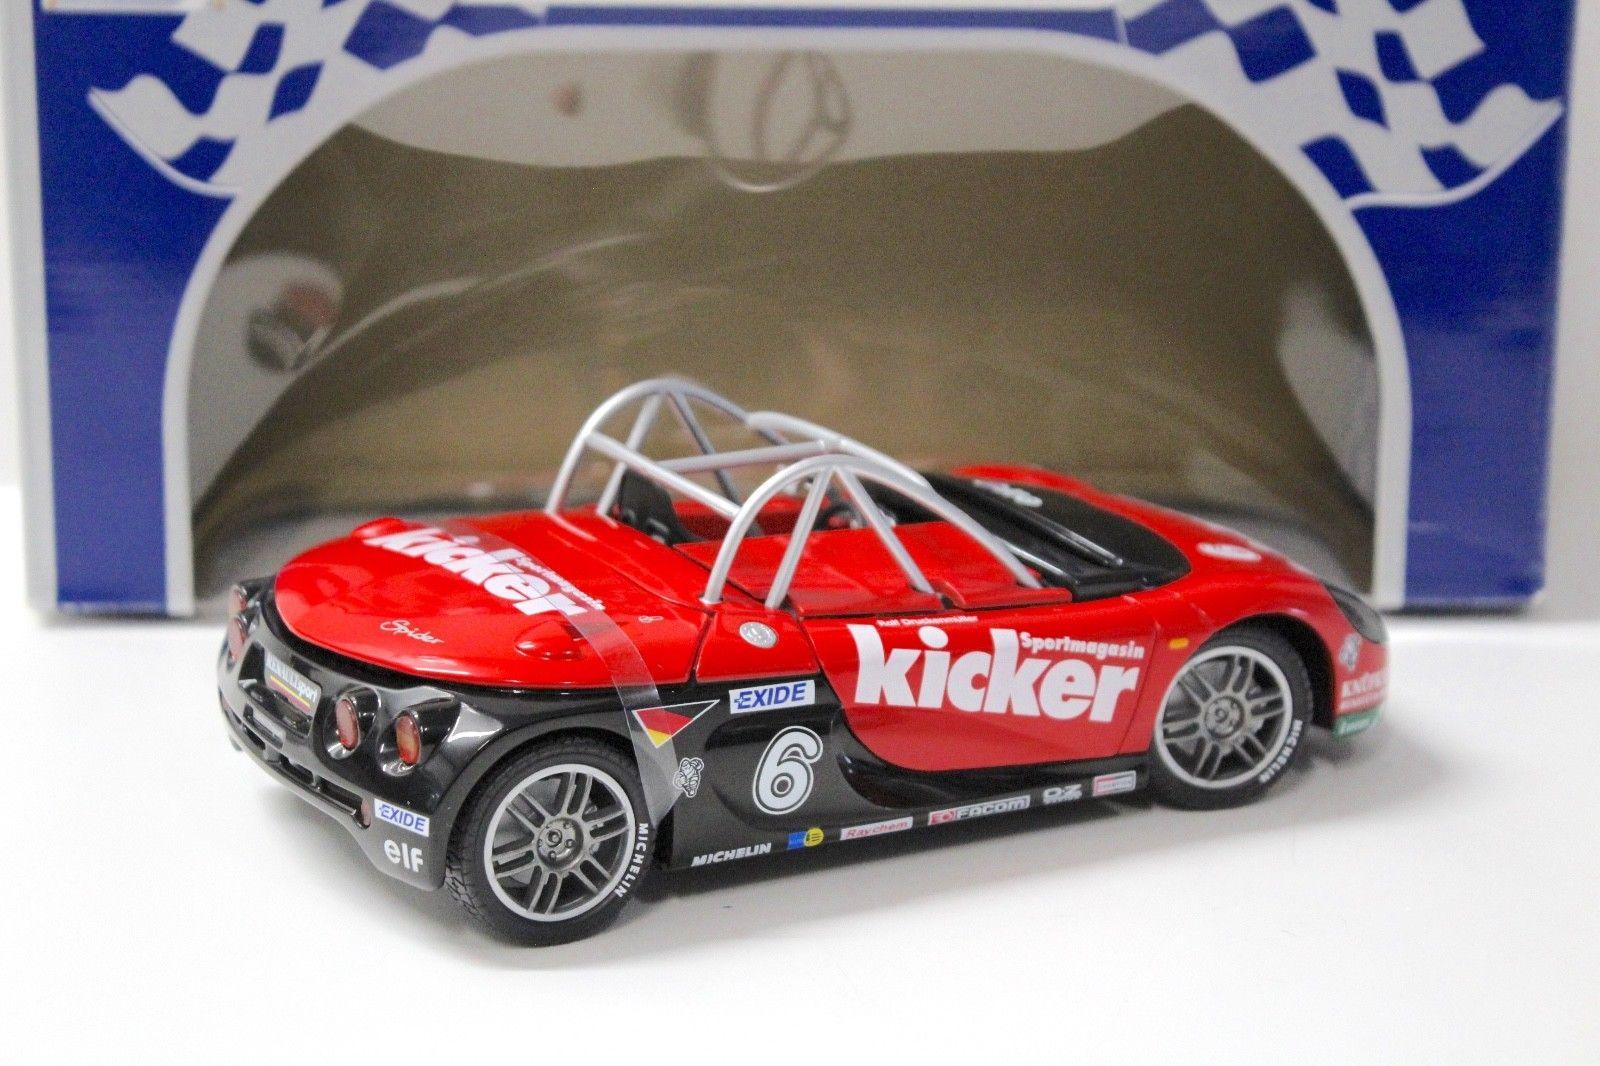 1:18 Anson Renault Sport Spider "KICKER" red/ black #6 